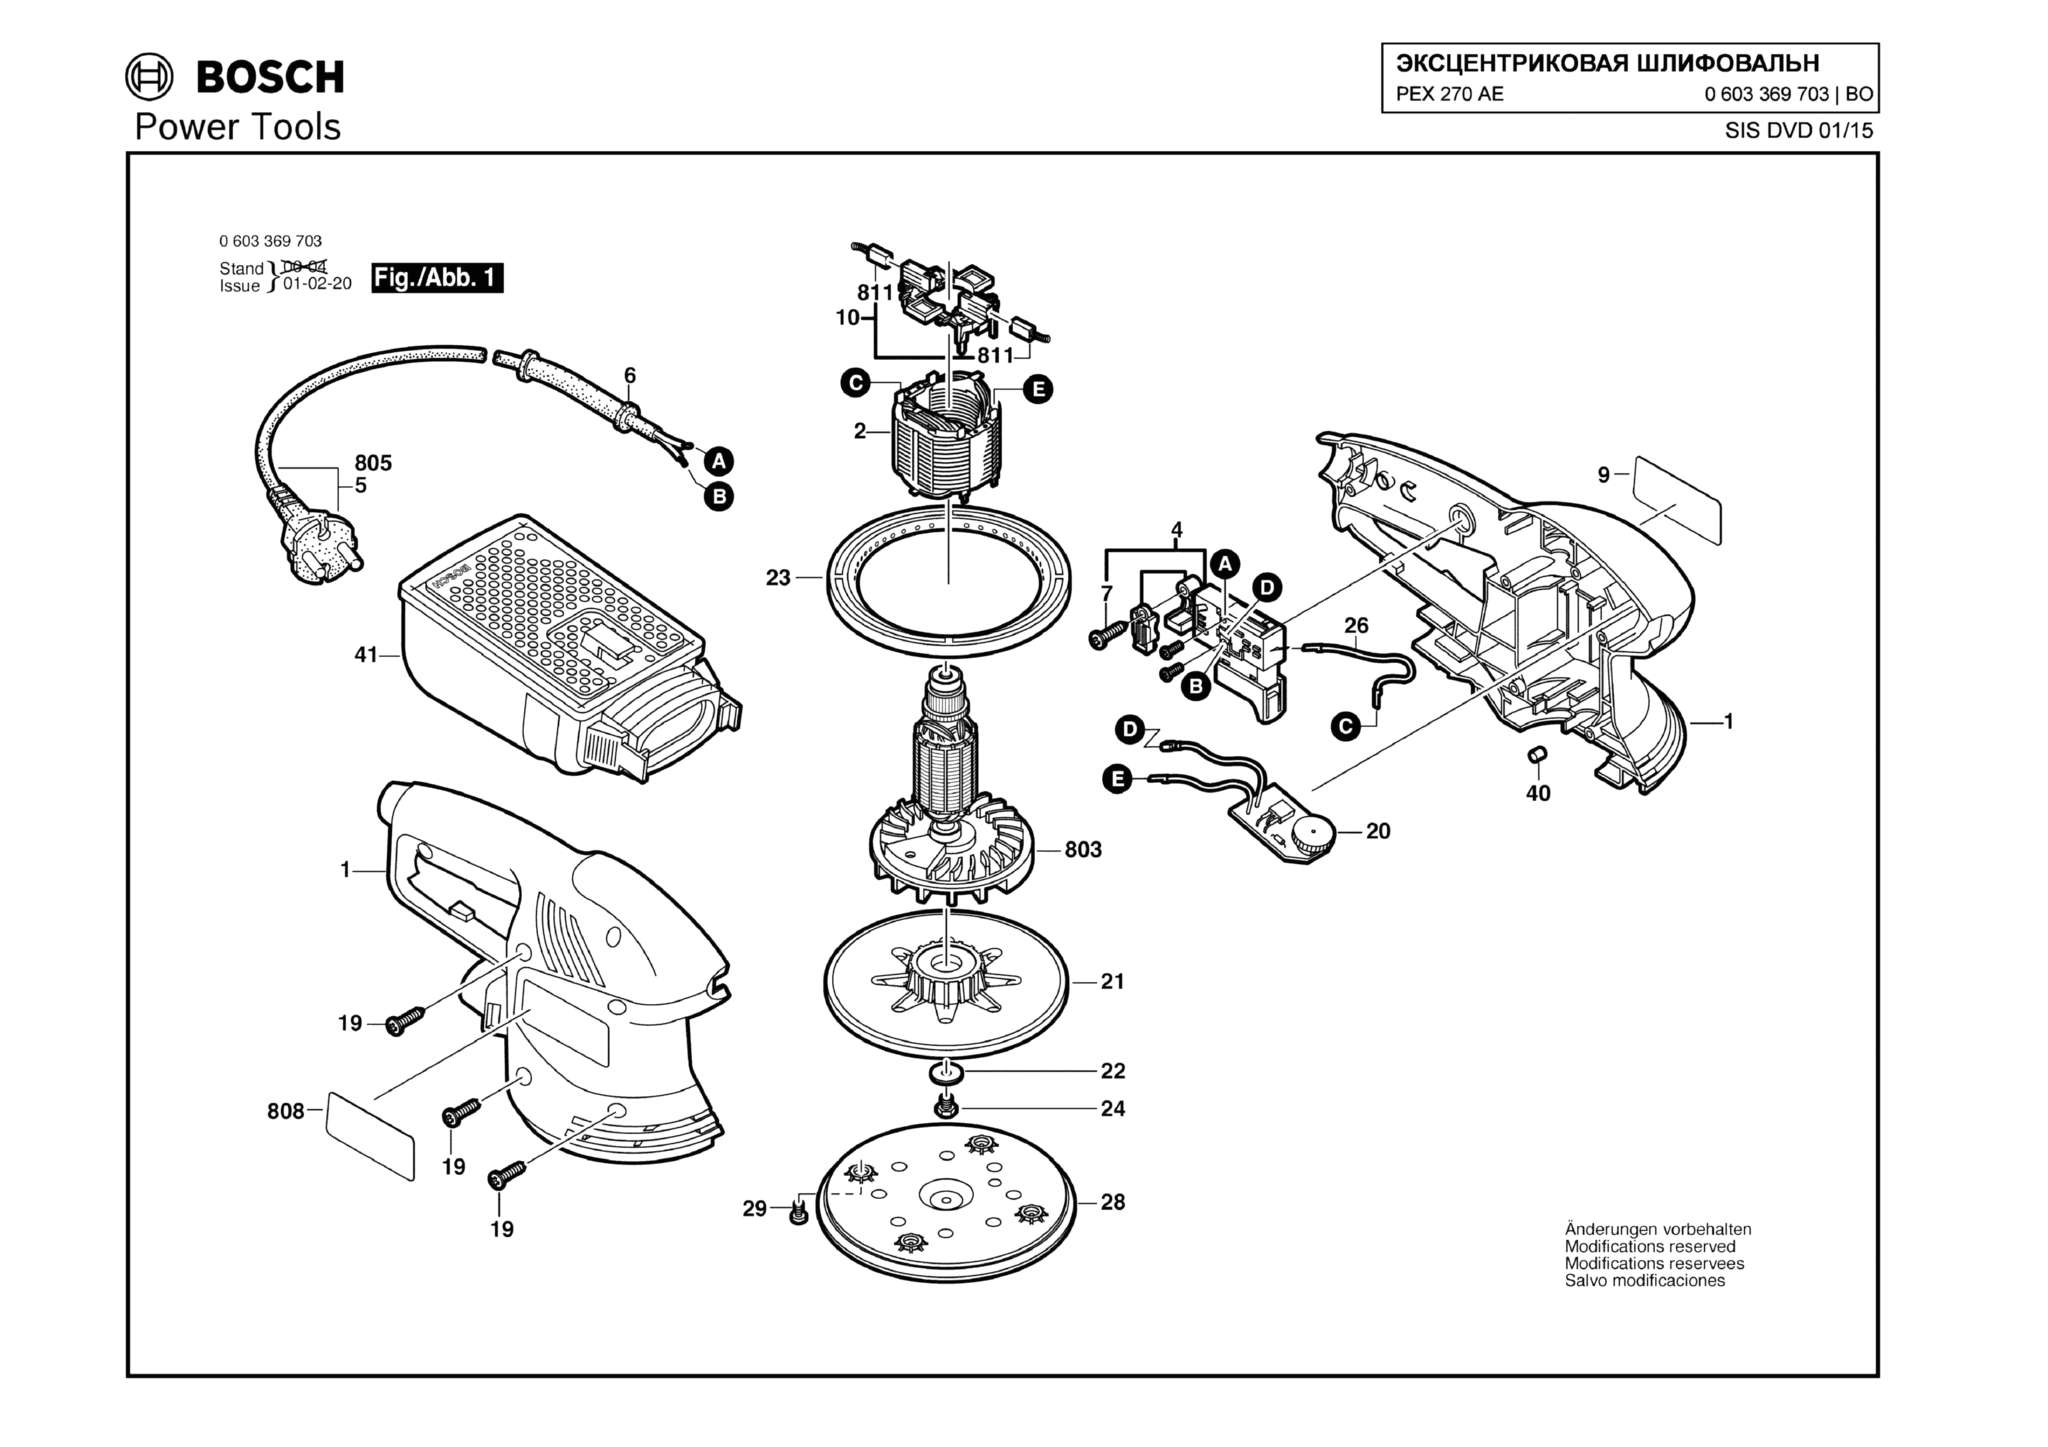 Запчасти, схема и деталировка Bosch PEX 270 AE (ТИП 0603369703)